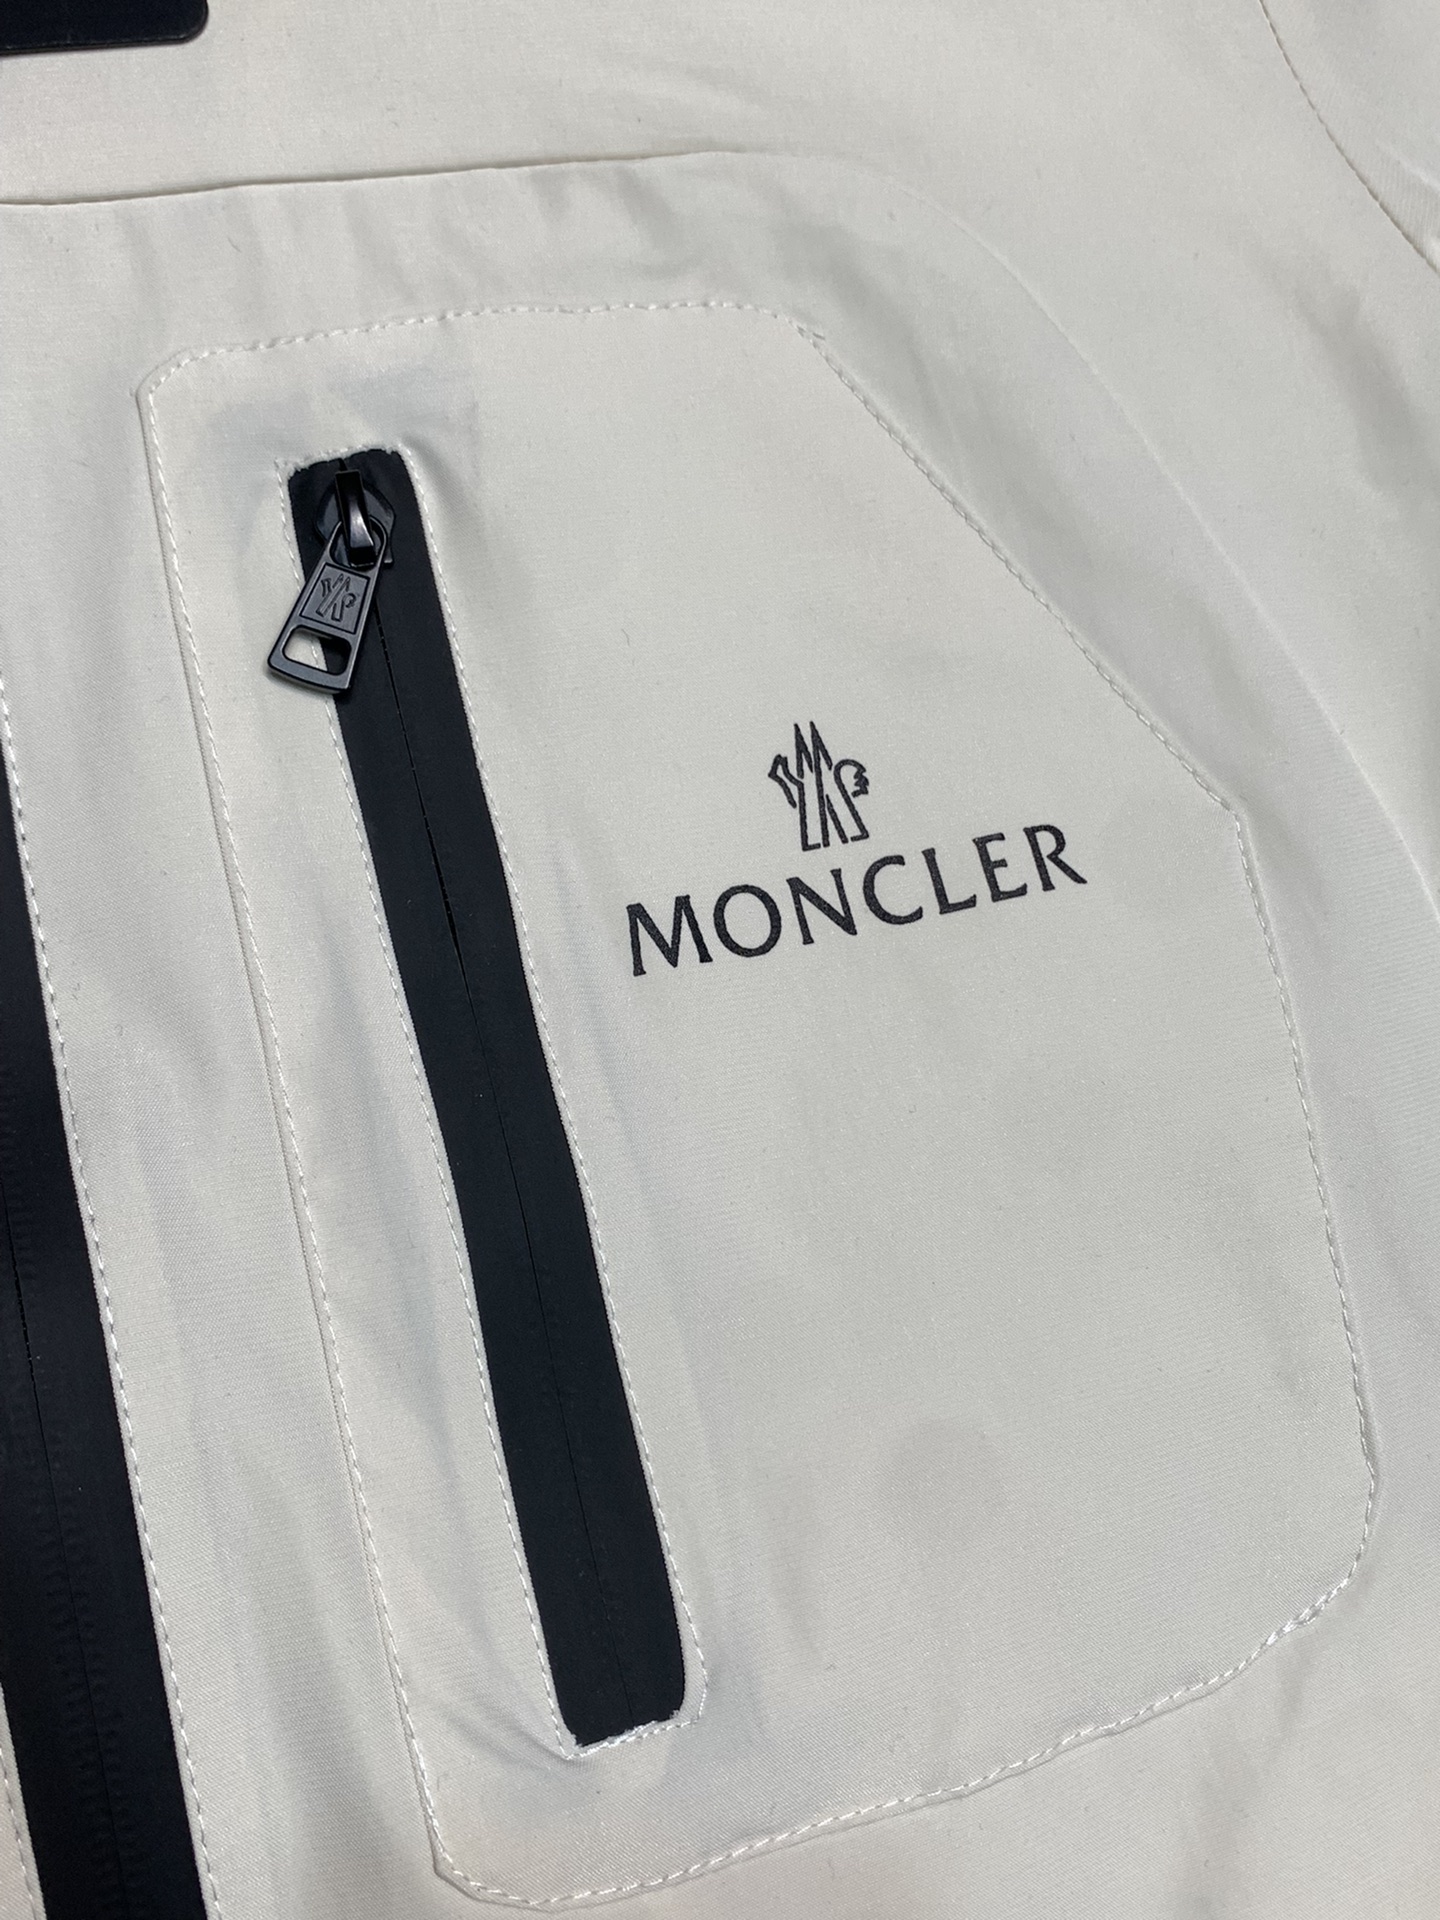 Moncler蒙口独家专供最新春秋时尚连帽夹克经典设计感与颜值爆棚的外套品质更是无法挑剔品控可以直接入手